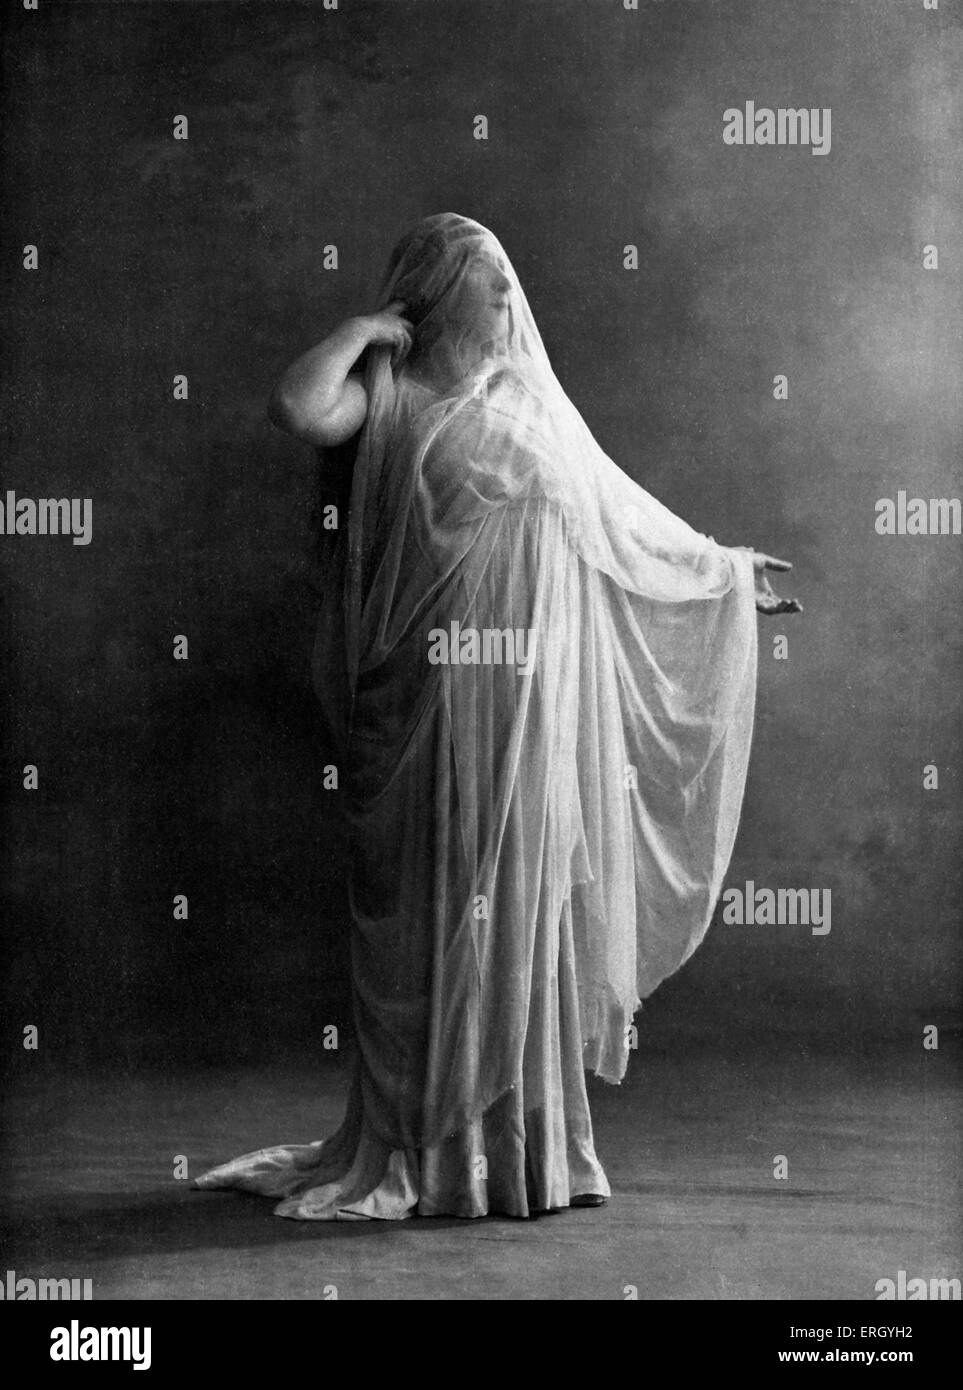 Segond Weber als Antigone in "Antigone", eine Tragödie von Sophokles, durchgeführt an der Comédie Française, Paris 1903. Stockfoto